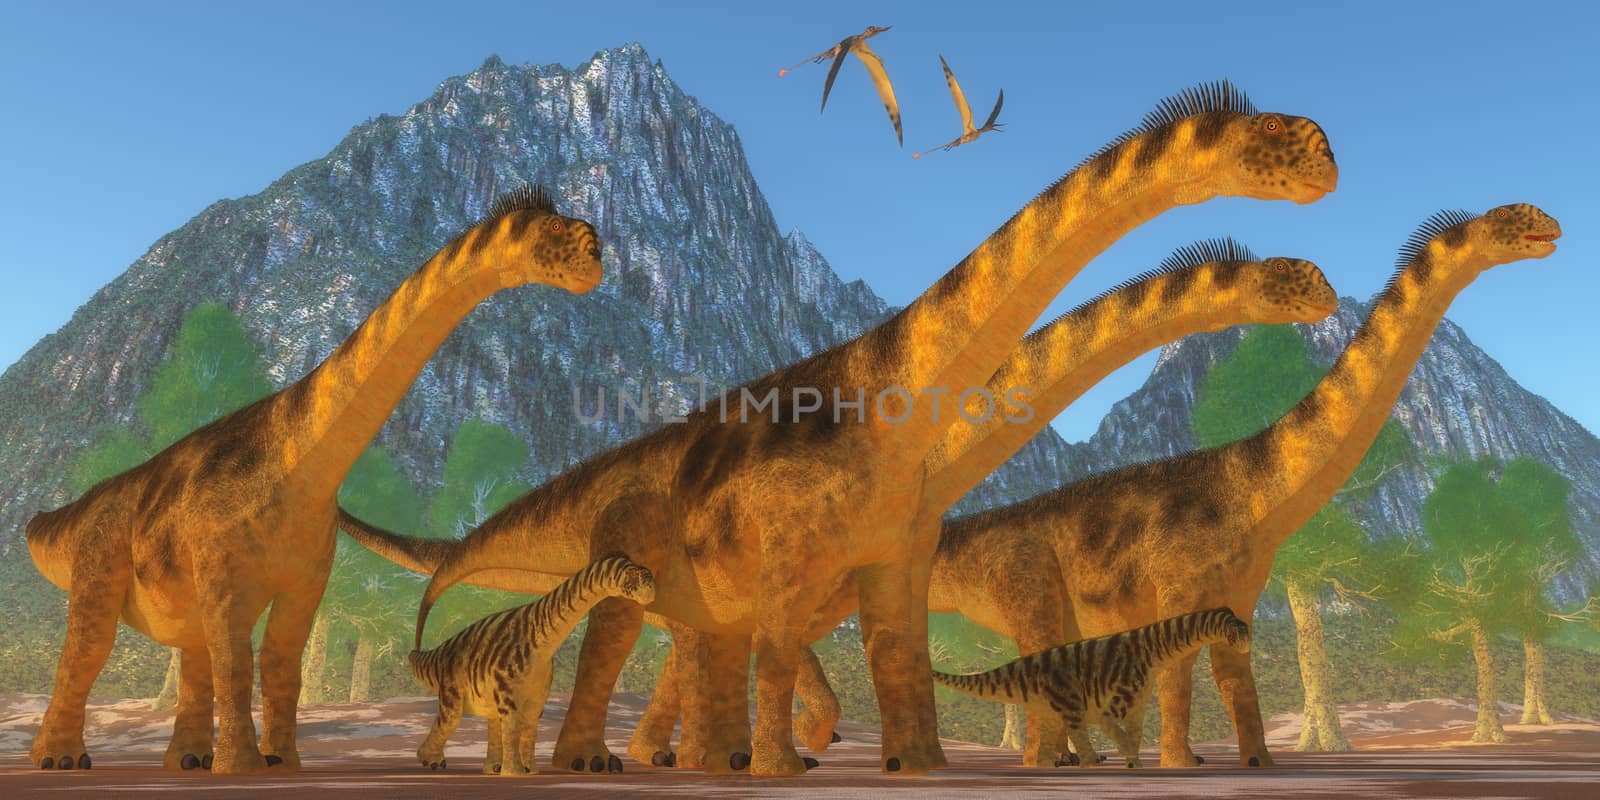 Camarasaurus Dinosaurs by Catmando